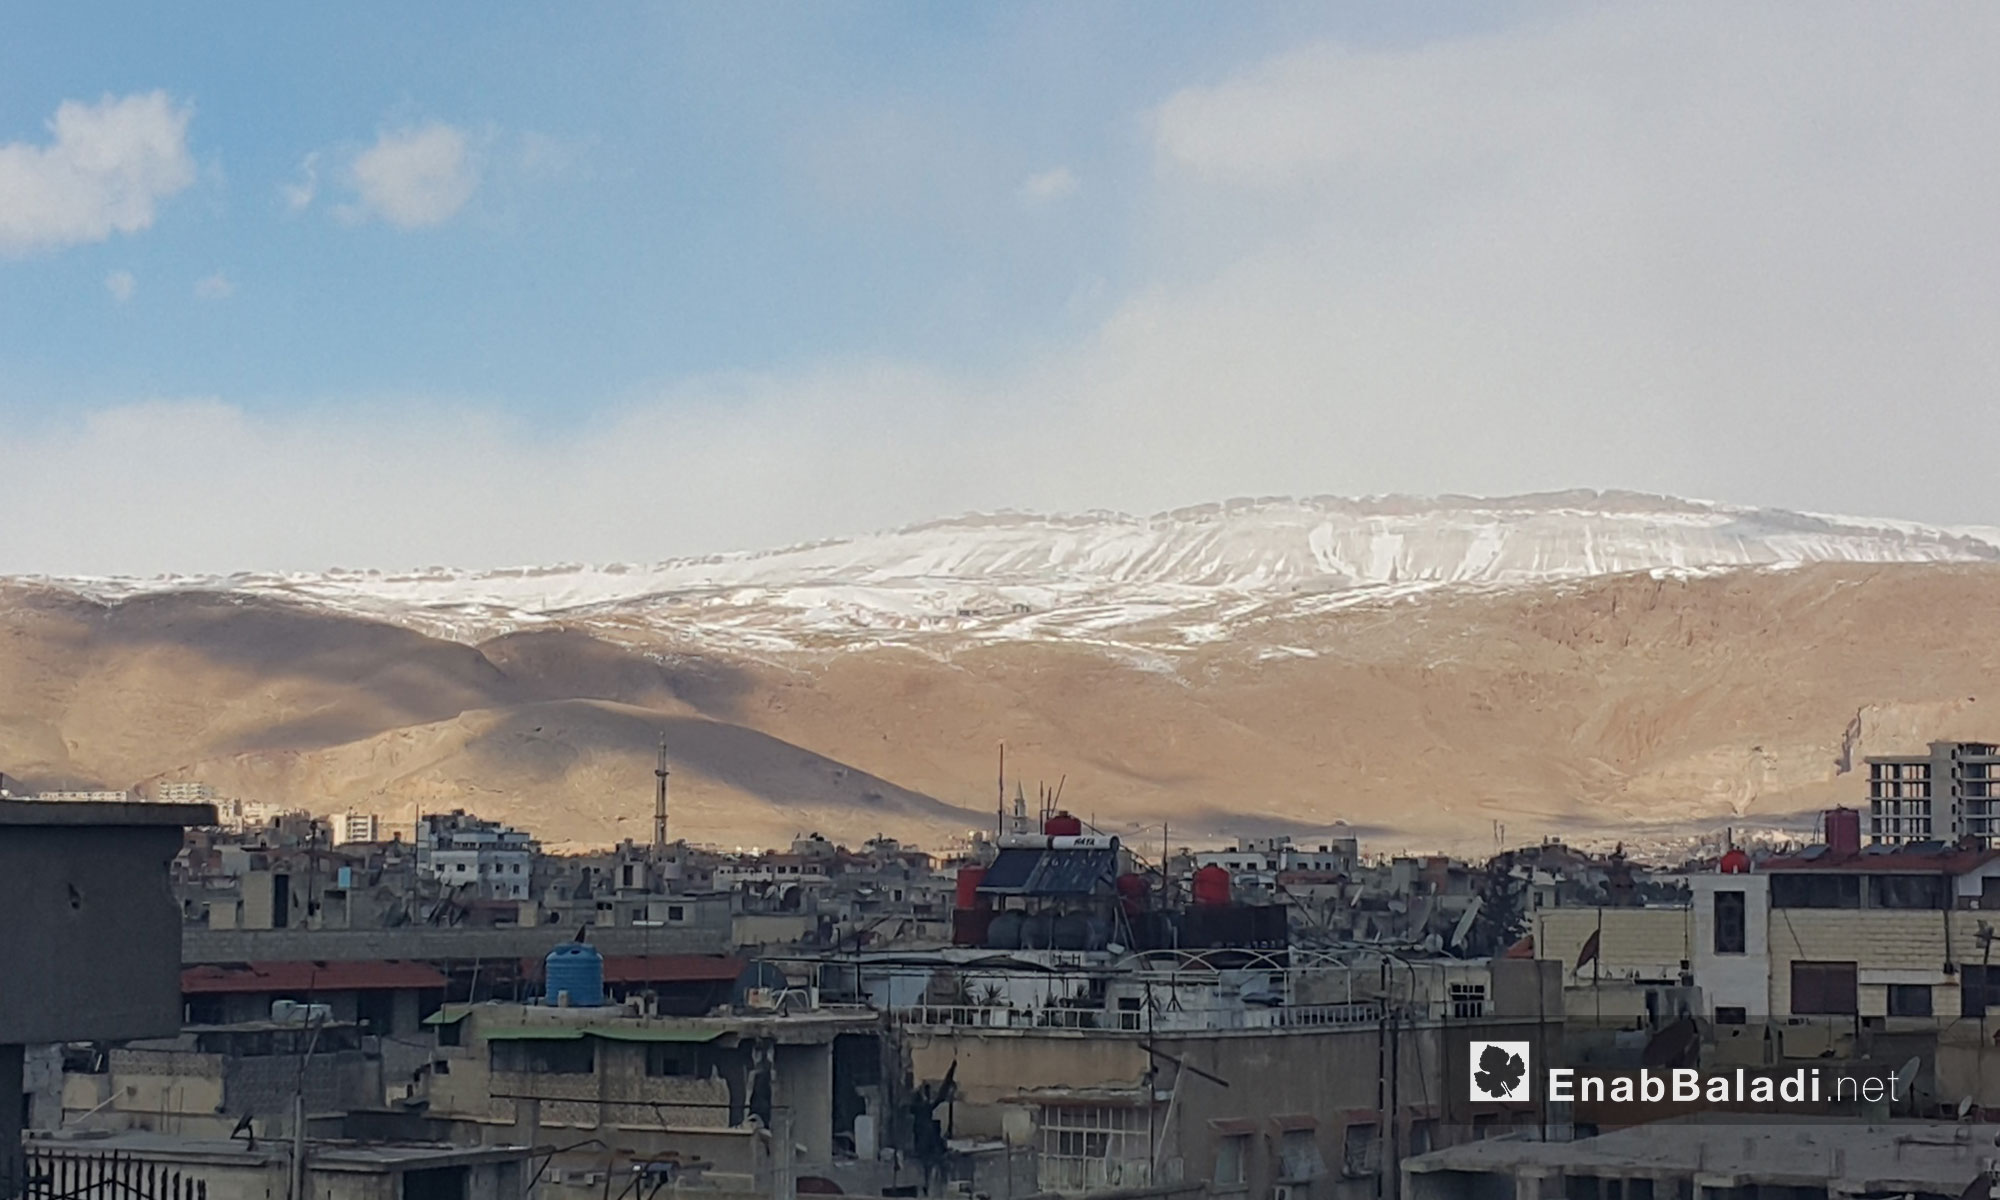 قمم الجبال المحيطة بالعاصمة دمشق تكسوها الثلوج - 28 كانون الثاني 2017 (عنب بلدي)